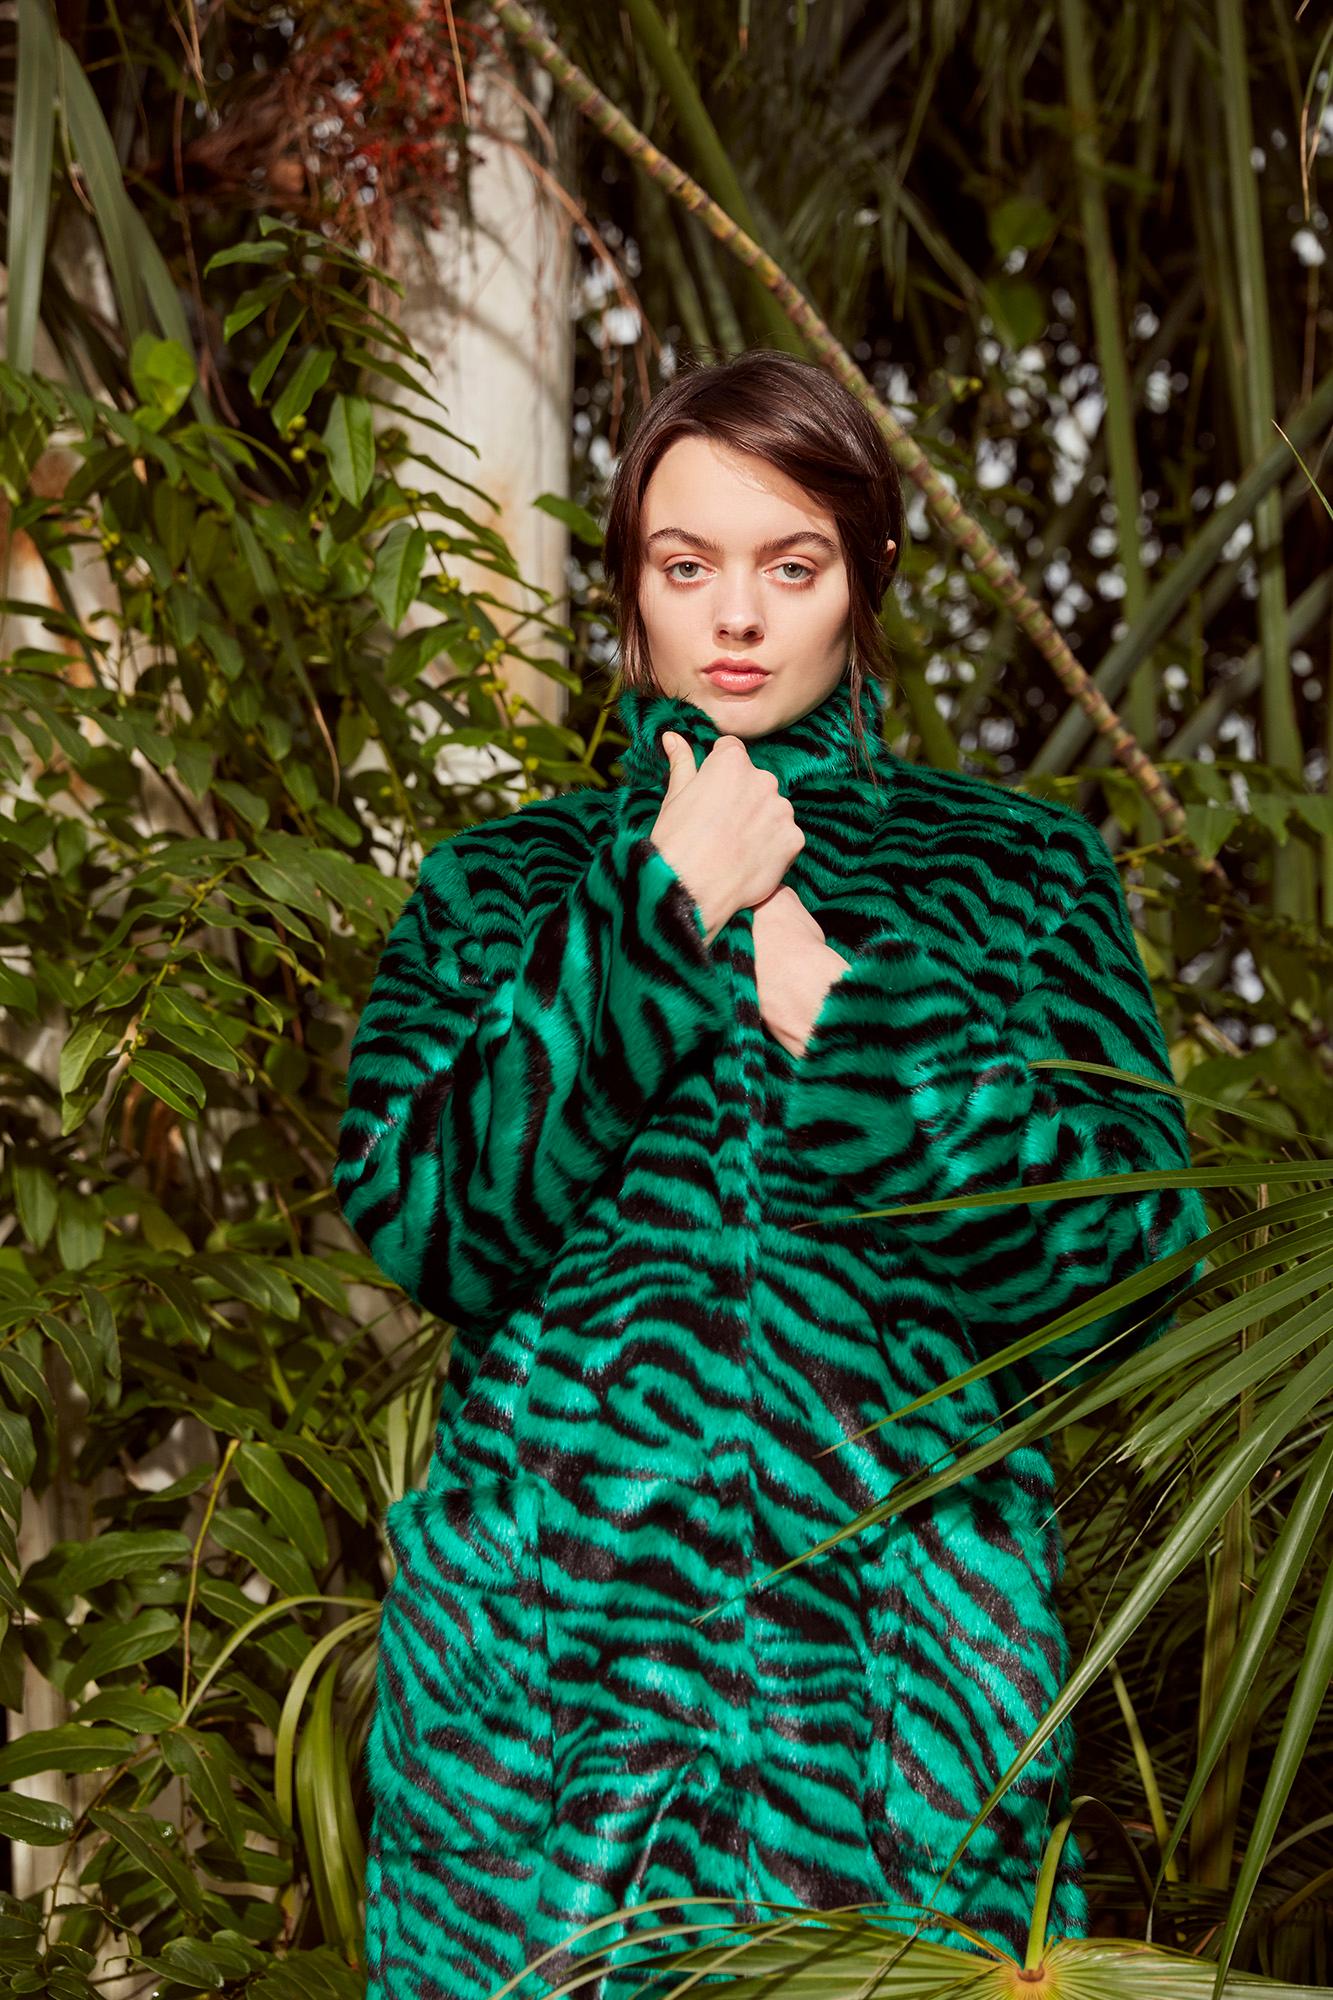 Verheyen London Esmeralda Faux Fur Coat in Emerald Green Zebra Print size uk 8 For Sale 2